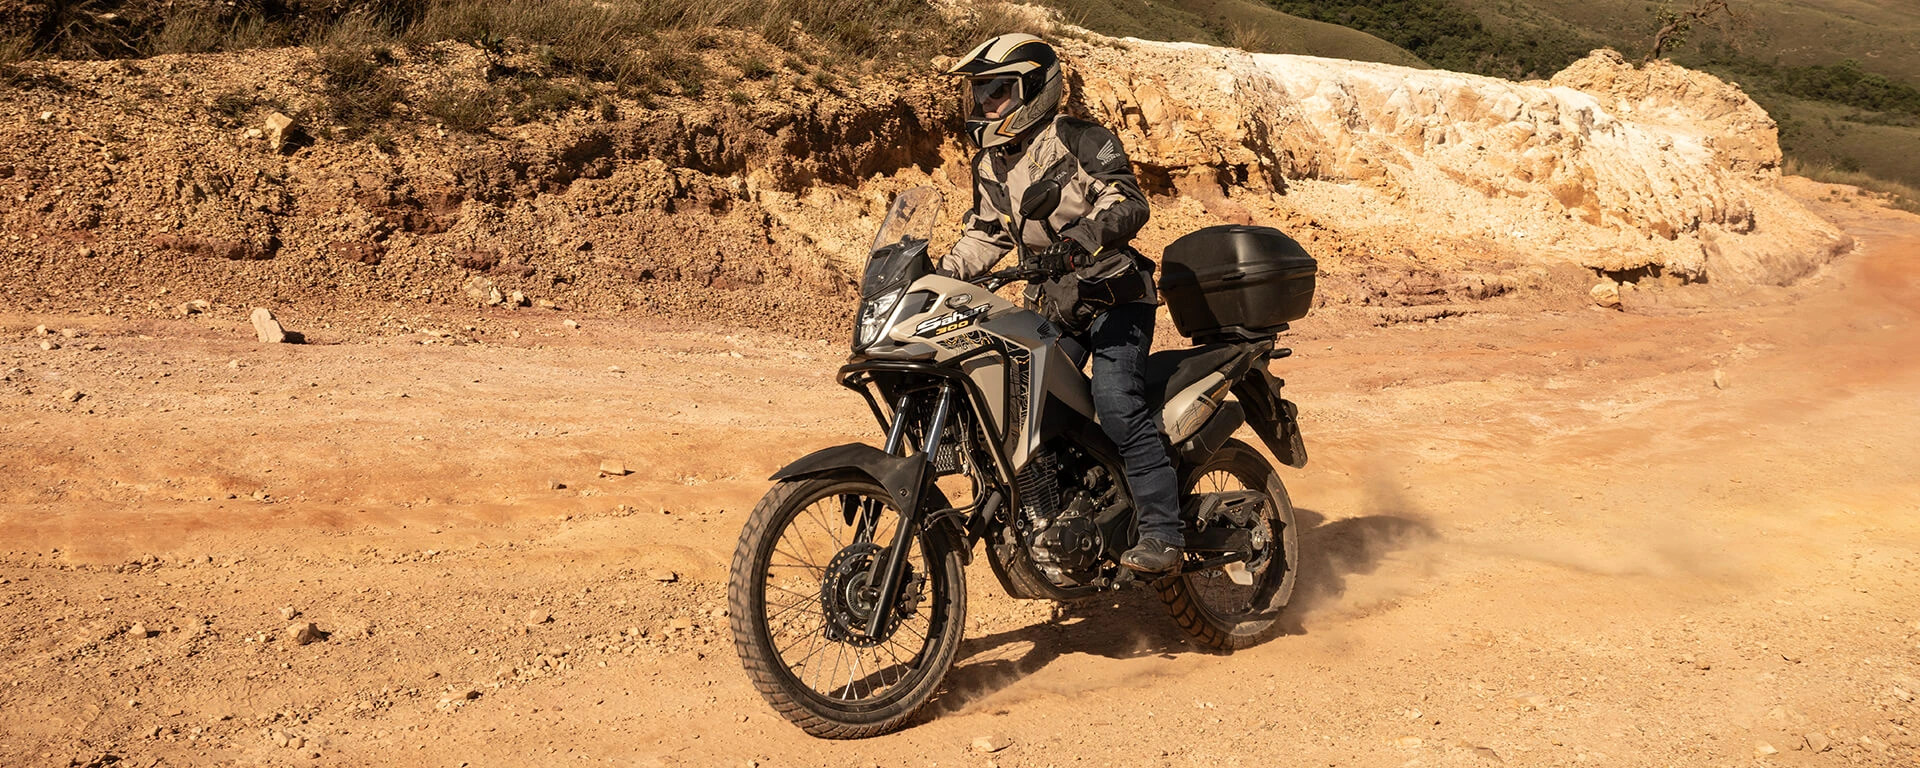 Moto Honda Sahara 300 Adventure com lago e cânion ao fundo